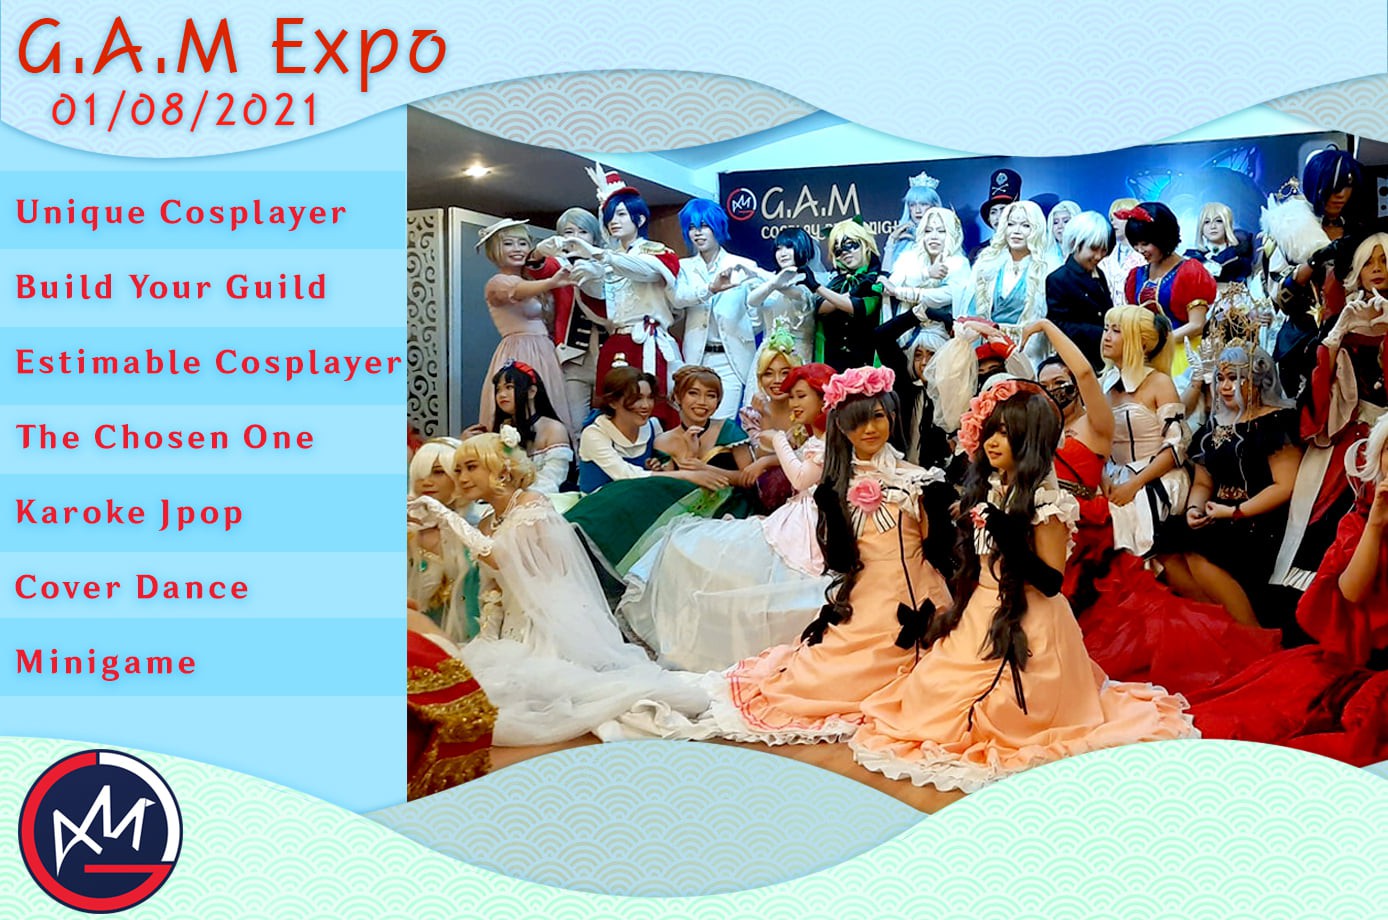 G.A.M Announce: G.A.M Expo - Festival hoành tráng dành cho cộng đồng Game, Manga, Anime